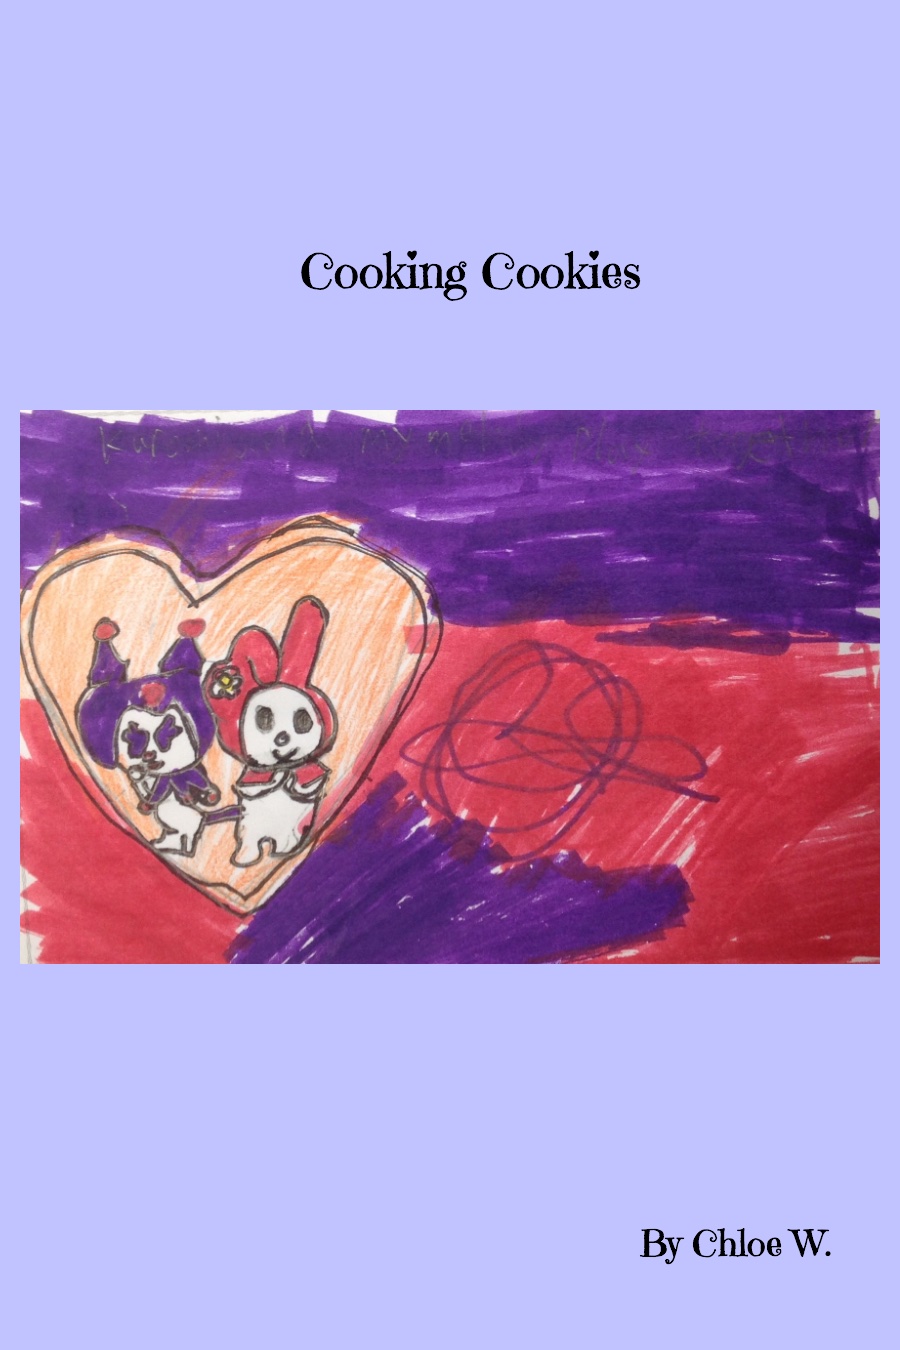 Cooking Cookies by Chloe W